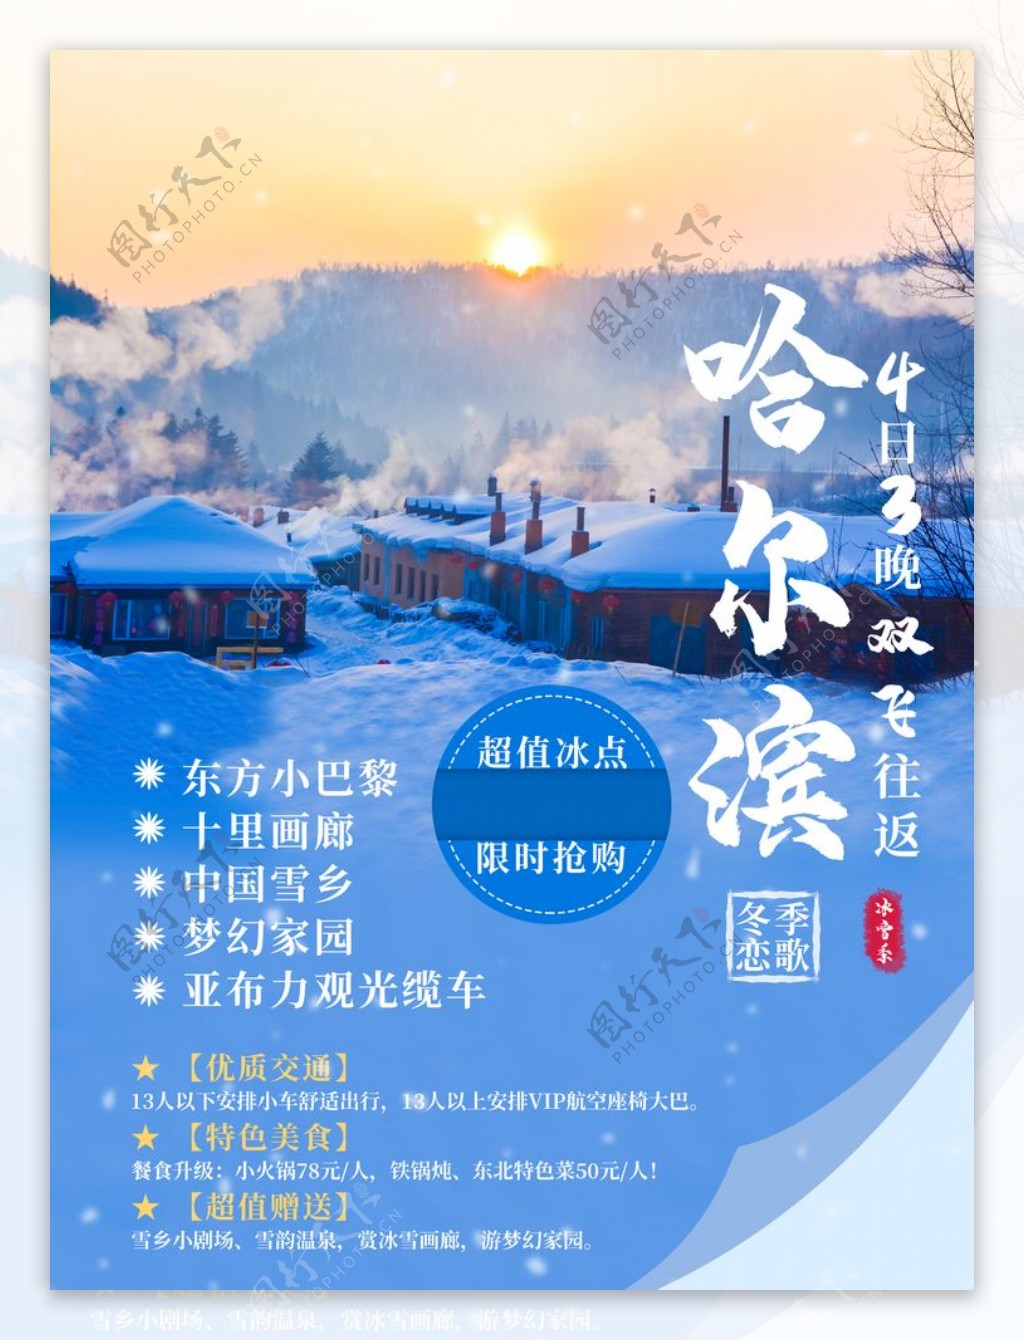 哈尔滨雪乡旅游宣传海报图片